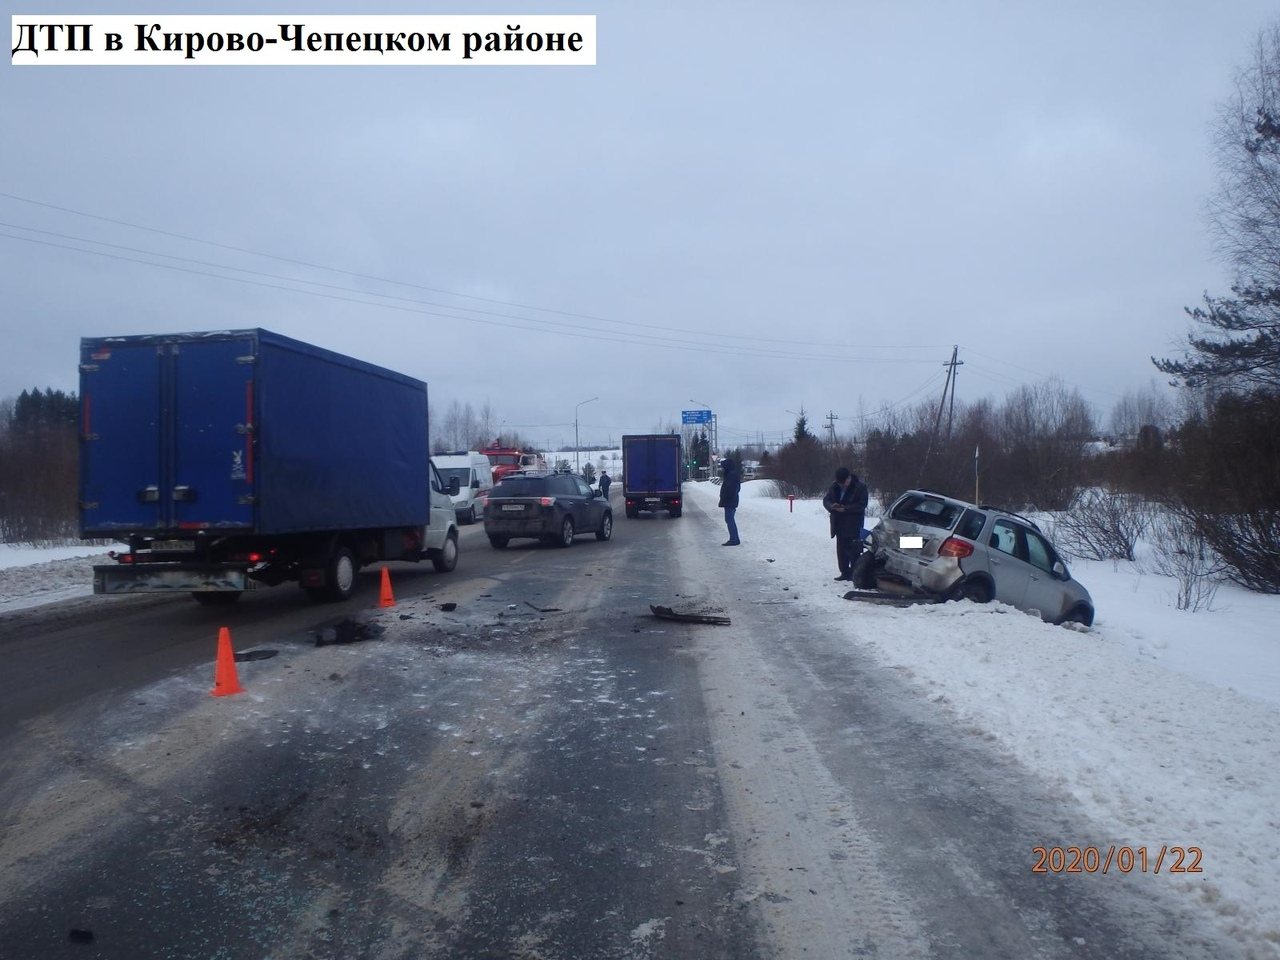 На Казанском повороте столкнулись три машины: появились подробности ДТП